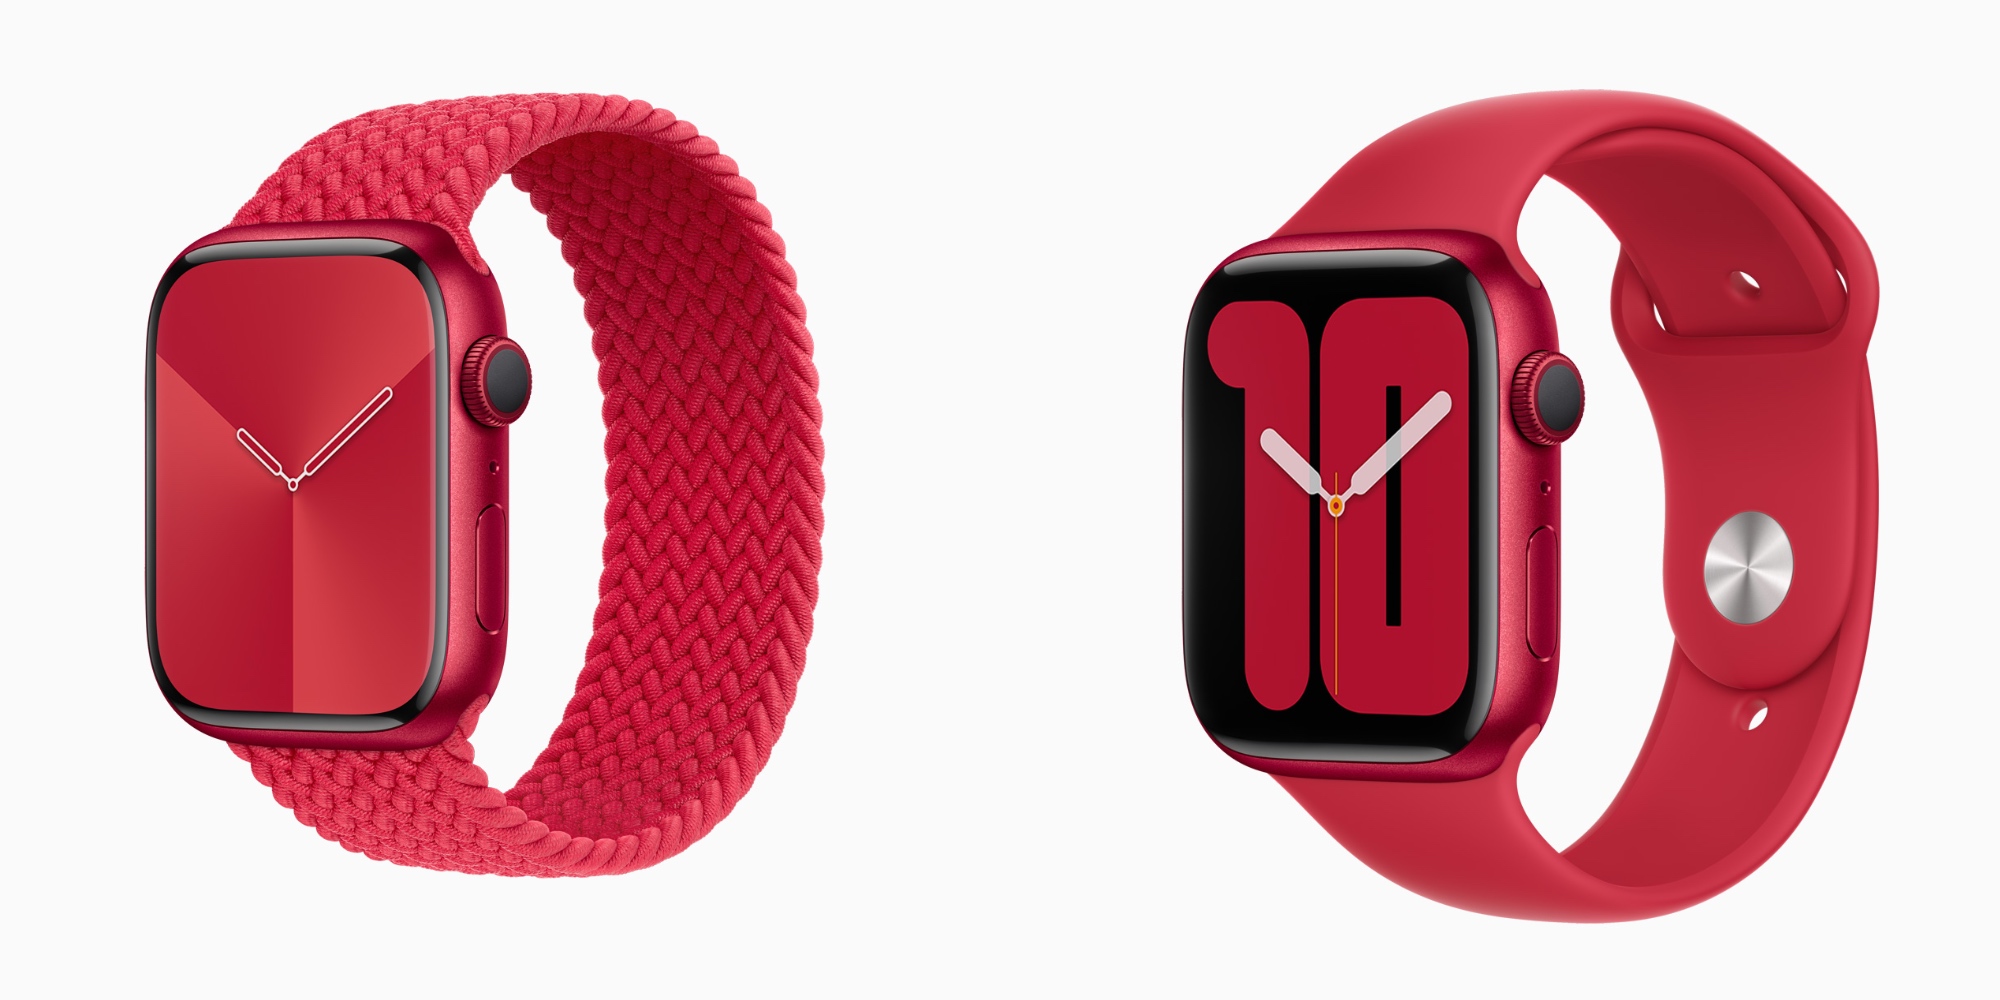 世界愛滋病日！蘋果提供六款紅色 Apple Watch 錶面下載 | (RED), Apple Watch, The Global Fund, 蘋果手錶 | iPhone News 愛瘋了